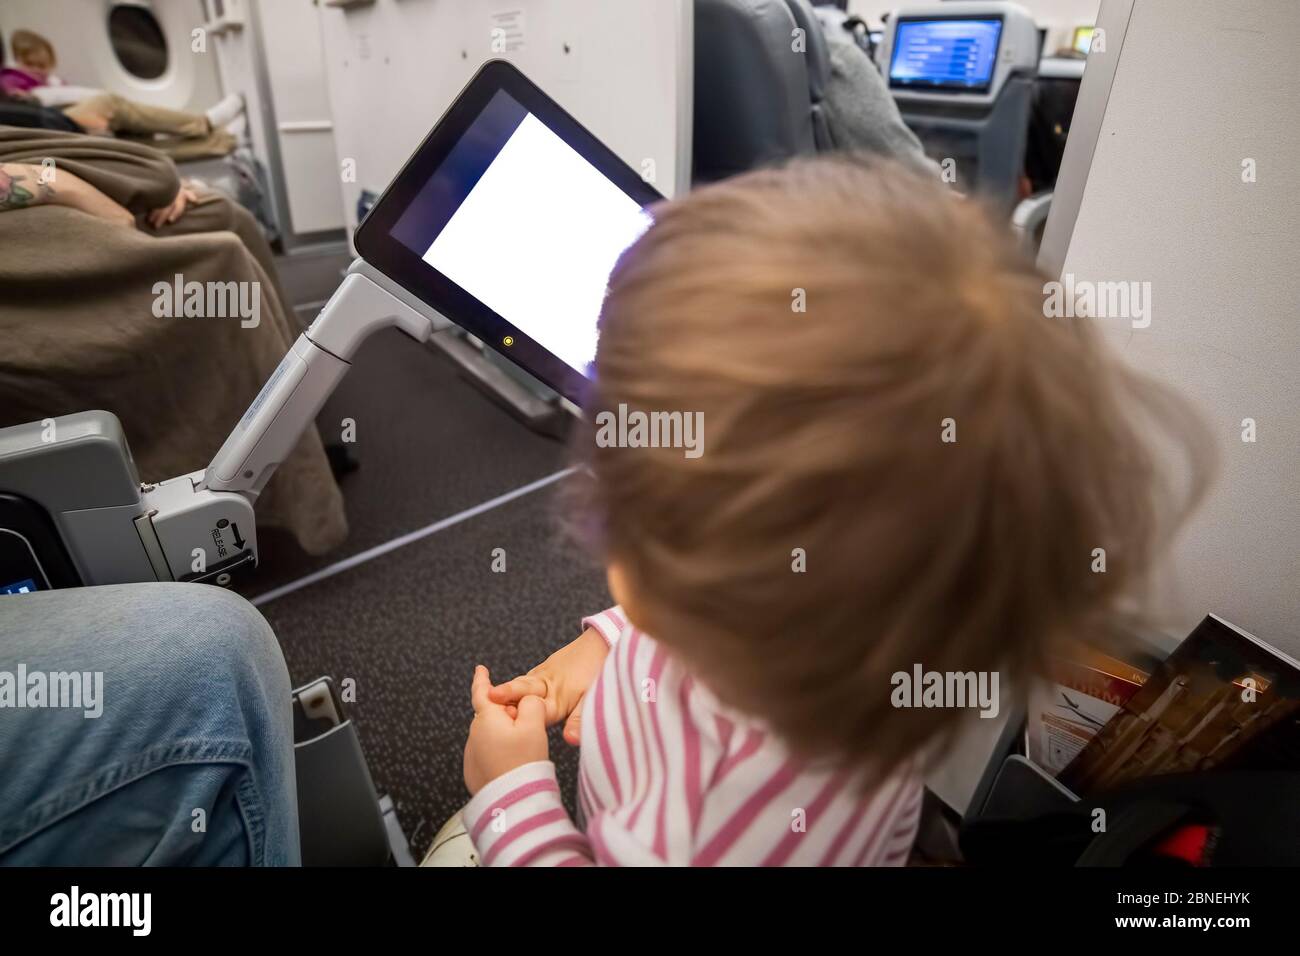 Unterhaltung an Bord des Flugzeugs. Kind, das auf weißen Bildschirm des Copyspace-Flugzeuges Multimedia-System schaut Stockfoto